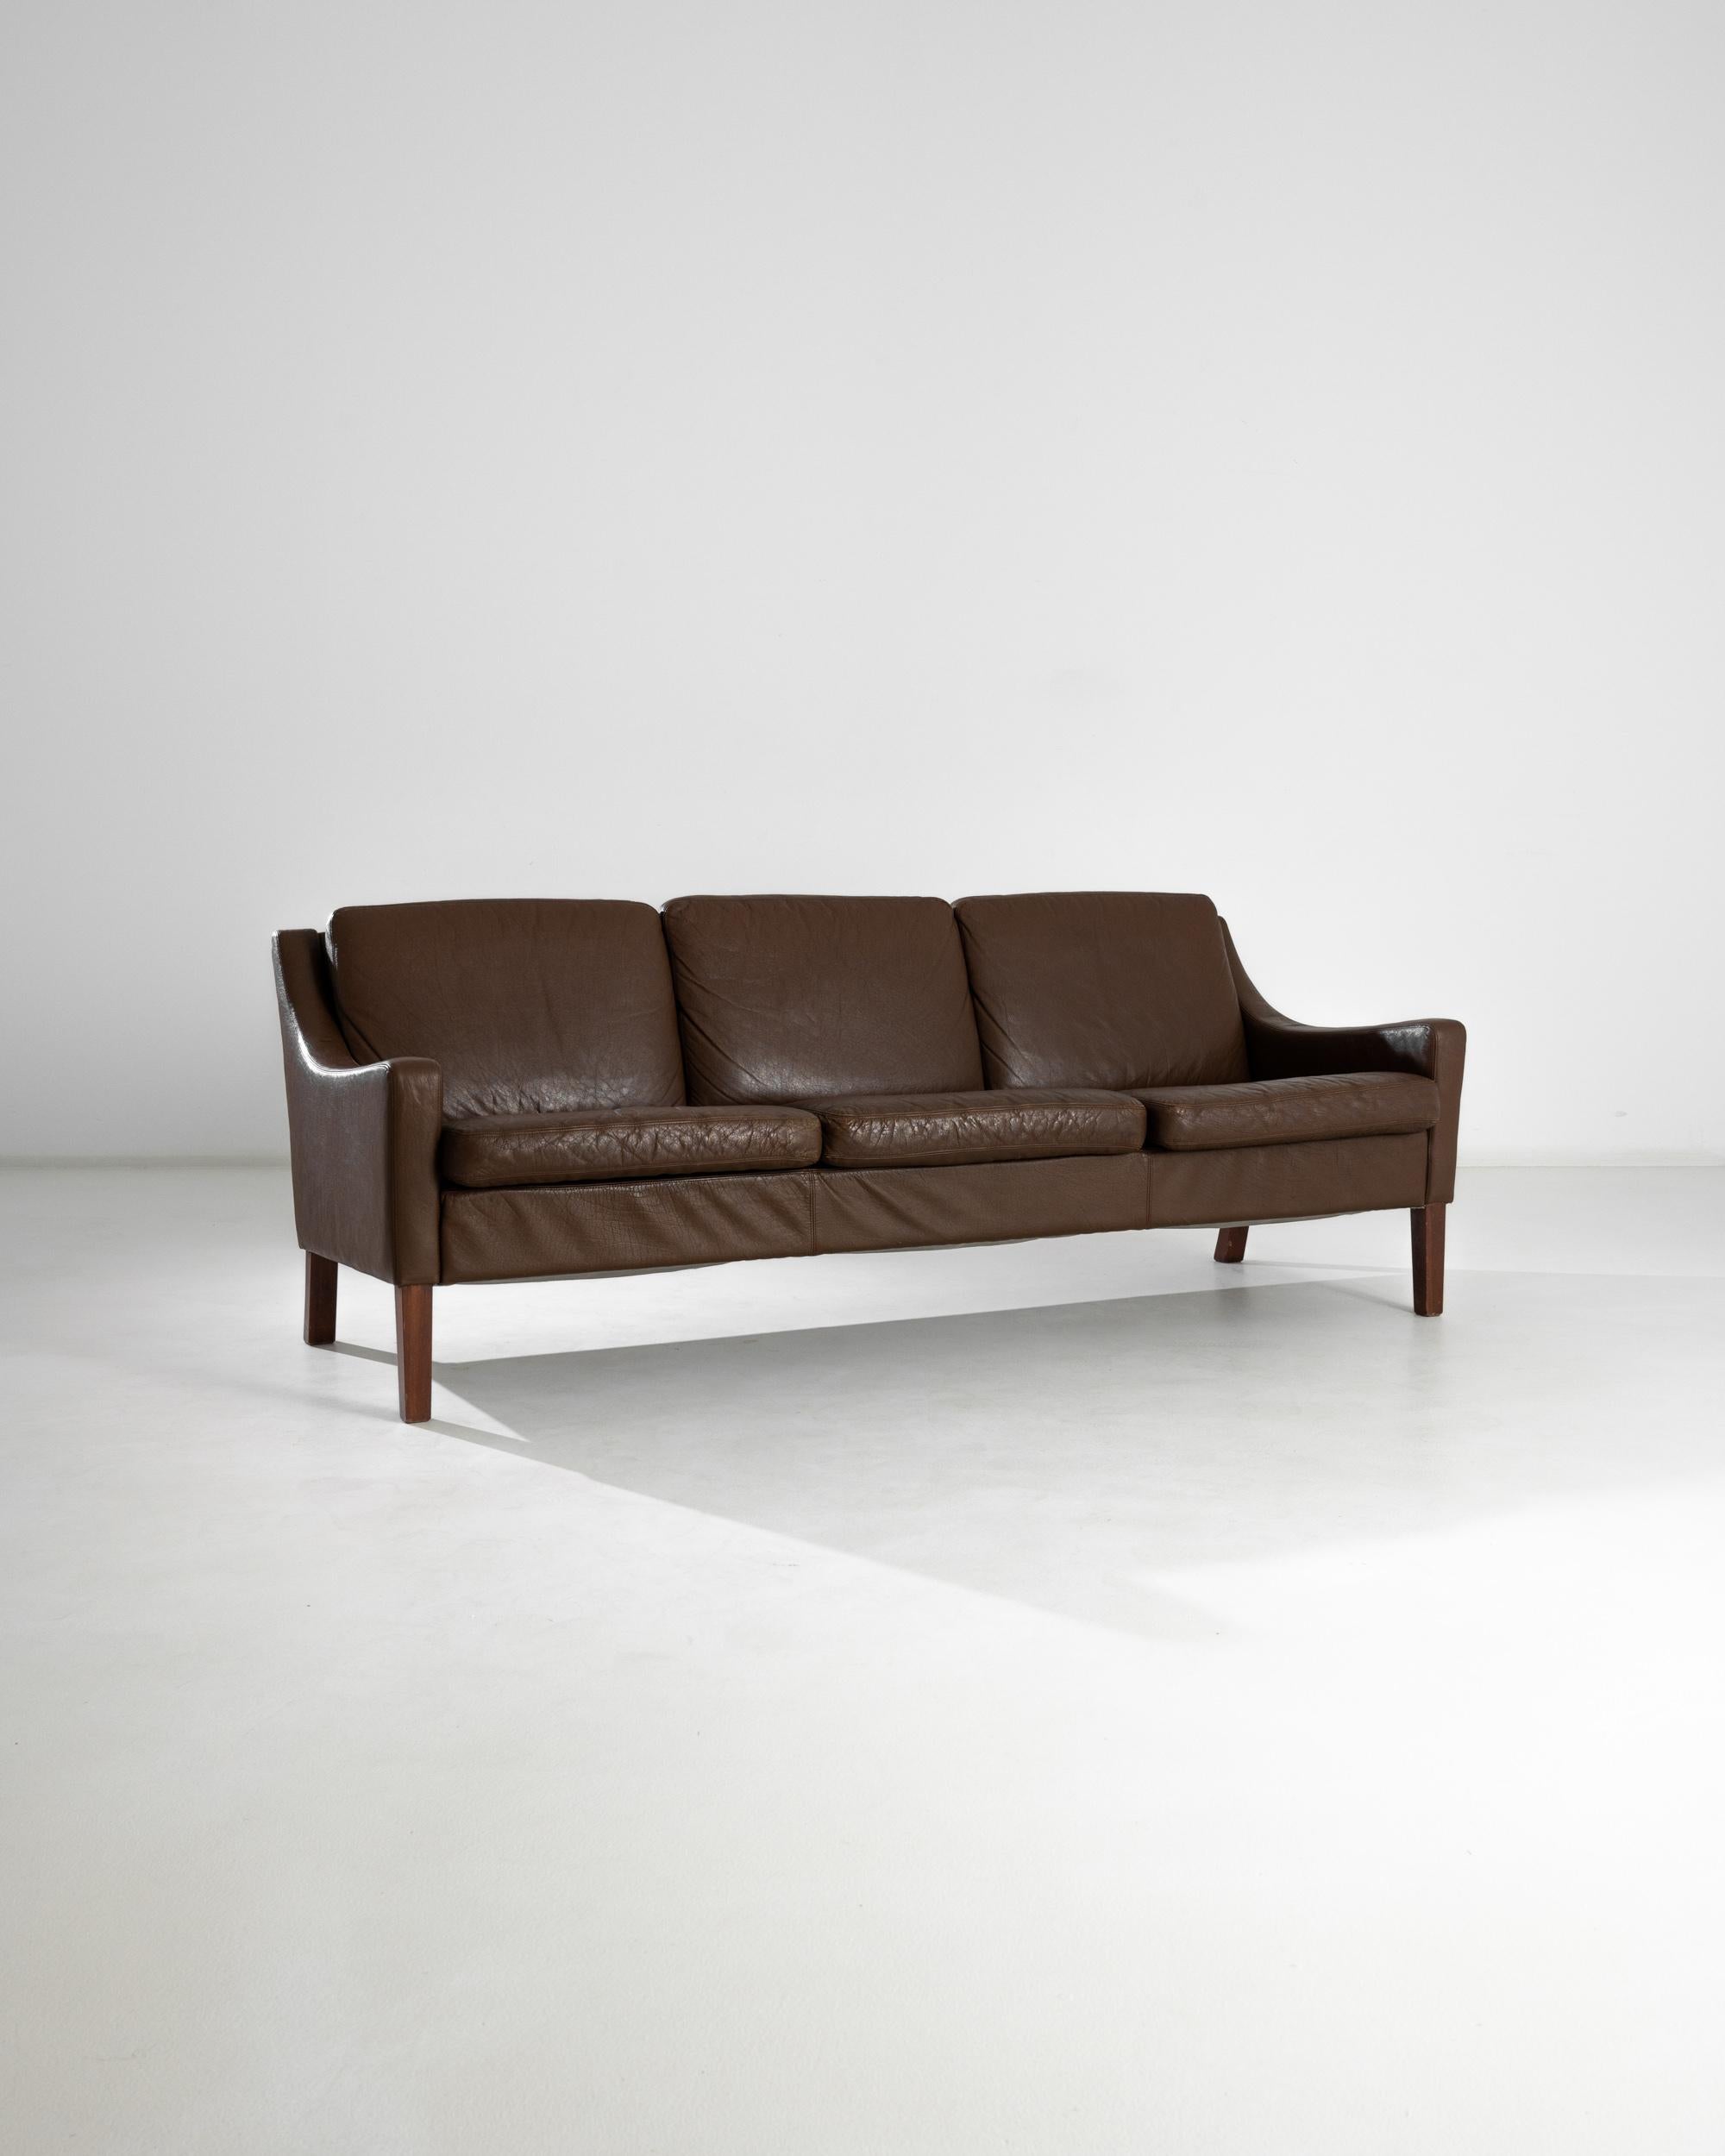 Ein Ledersofa aus Dänemark, hergestellt im 20. Jahrhundert. Ein wunderschönes Dreisitzer-Sofa im Vintage-Stil, umhüllt von prächtigem braunem Leder. Auf vier quadratischen Beinen stehend, befindet sich dieses Stück am Schnittpunkt verschiedener